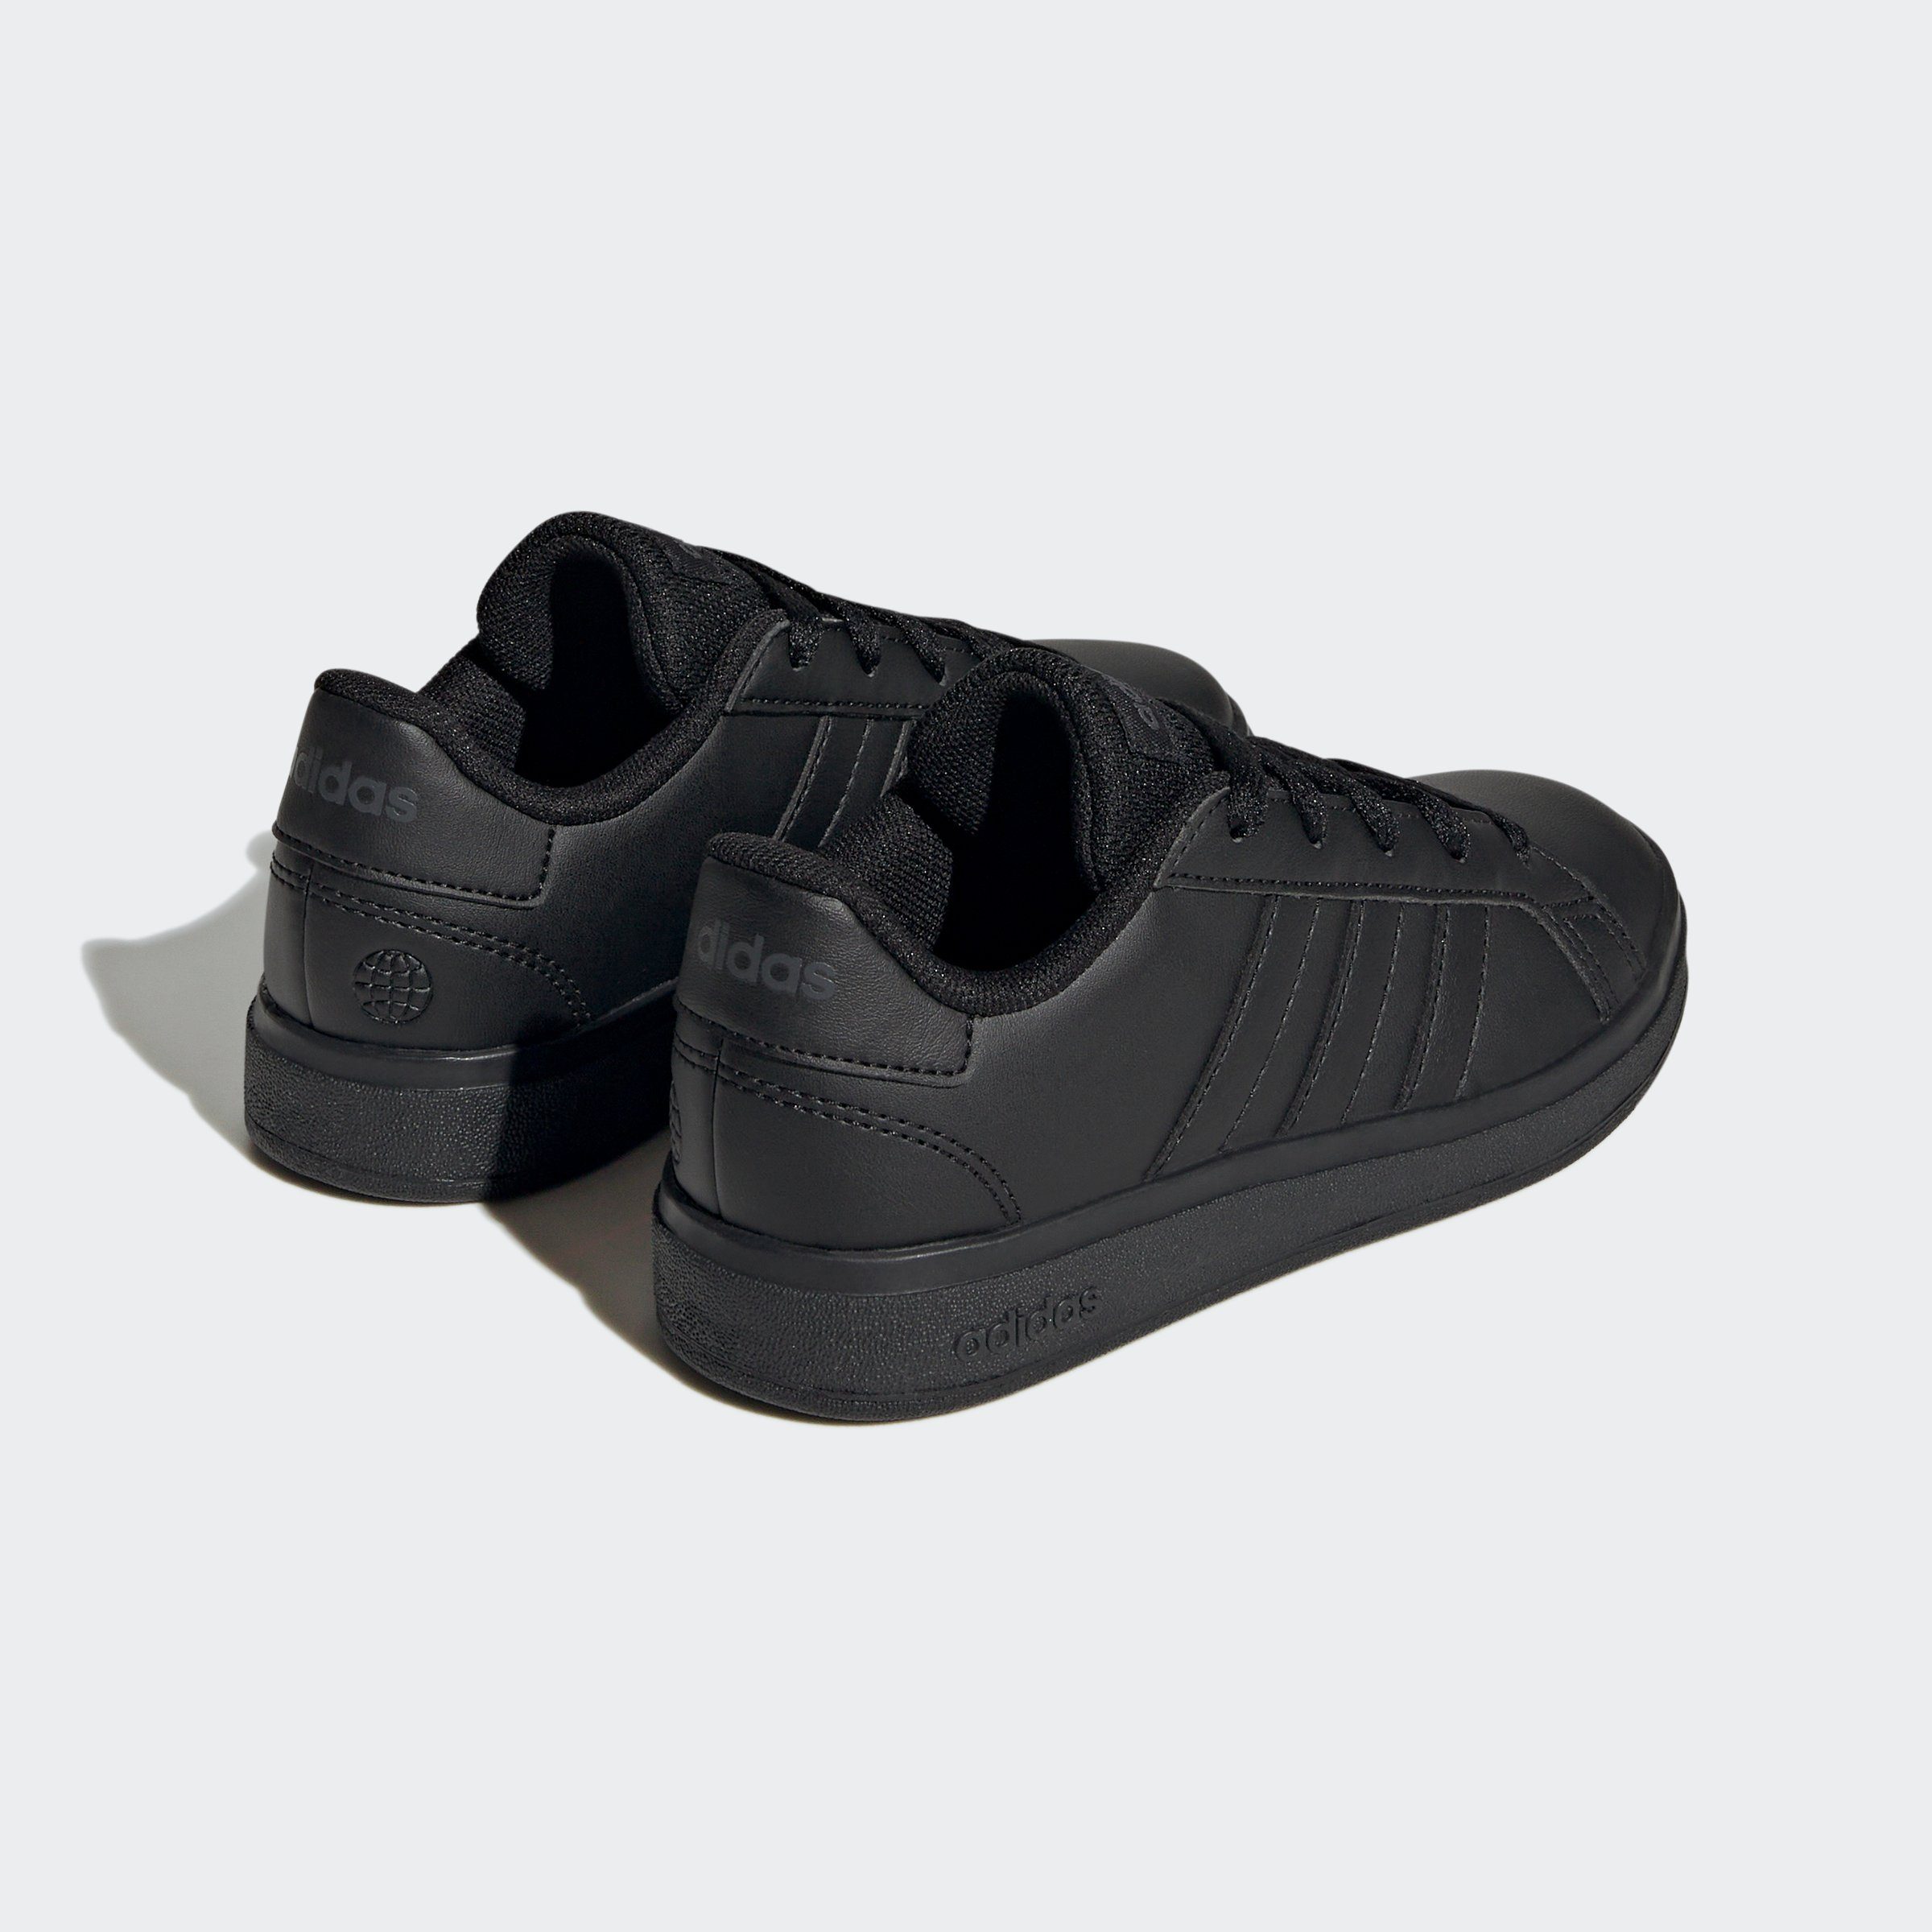 GRAND TENNIS CBLACK/CBLACK/GRESIX LACE-UP adidas den auf adidas COURT Sneaker Sportswear LIFESTYLE Spuren Superstar des Design